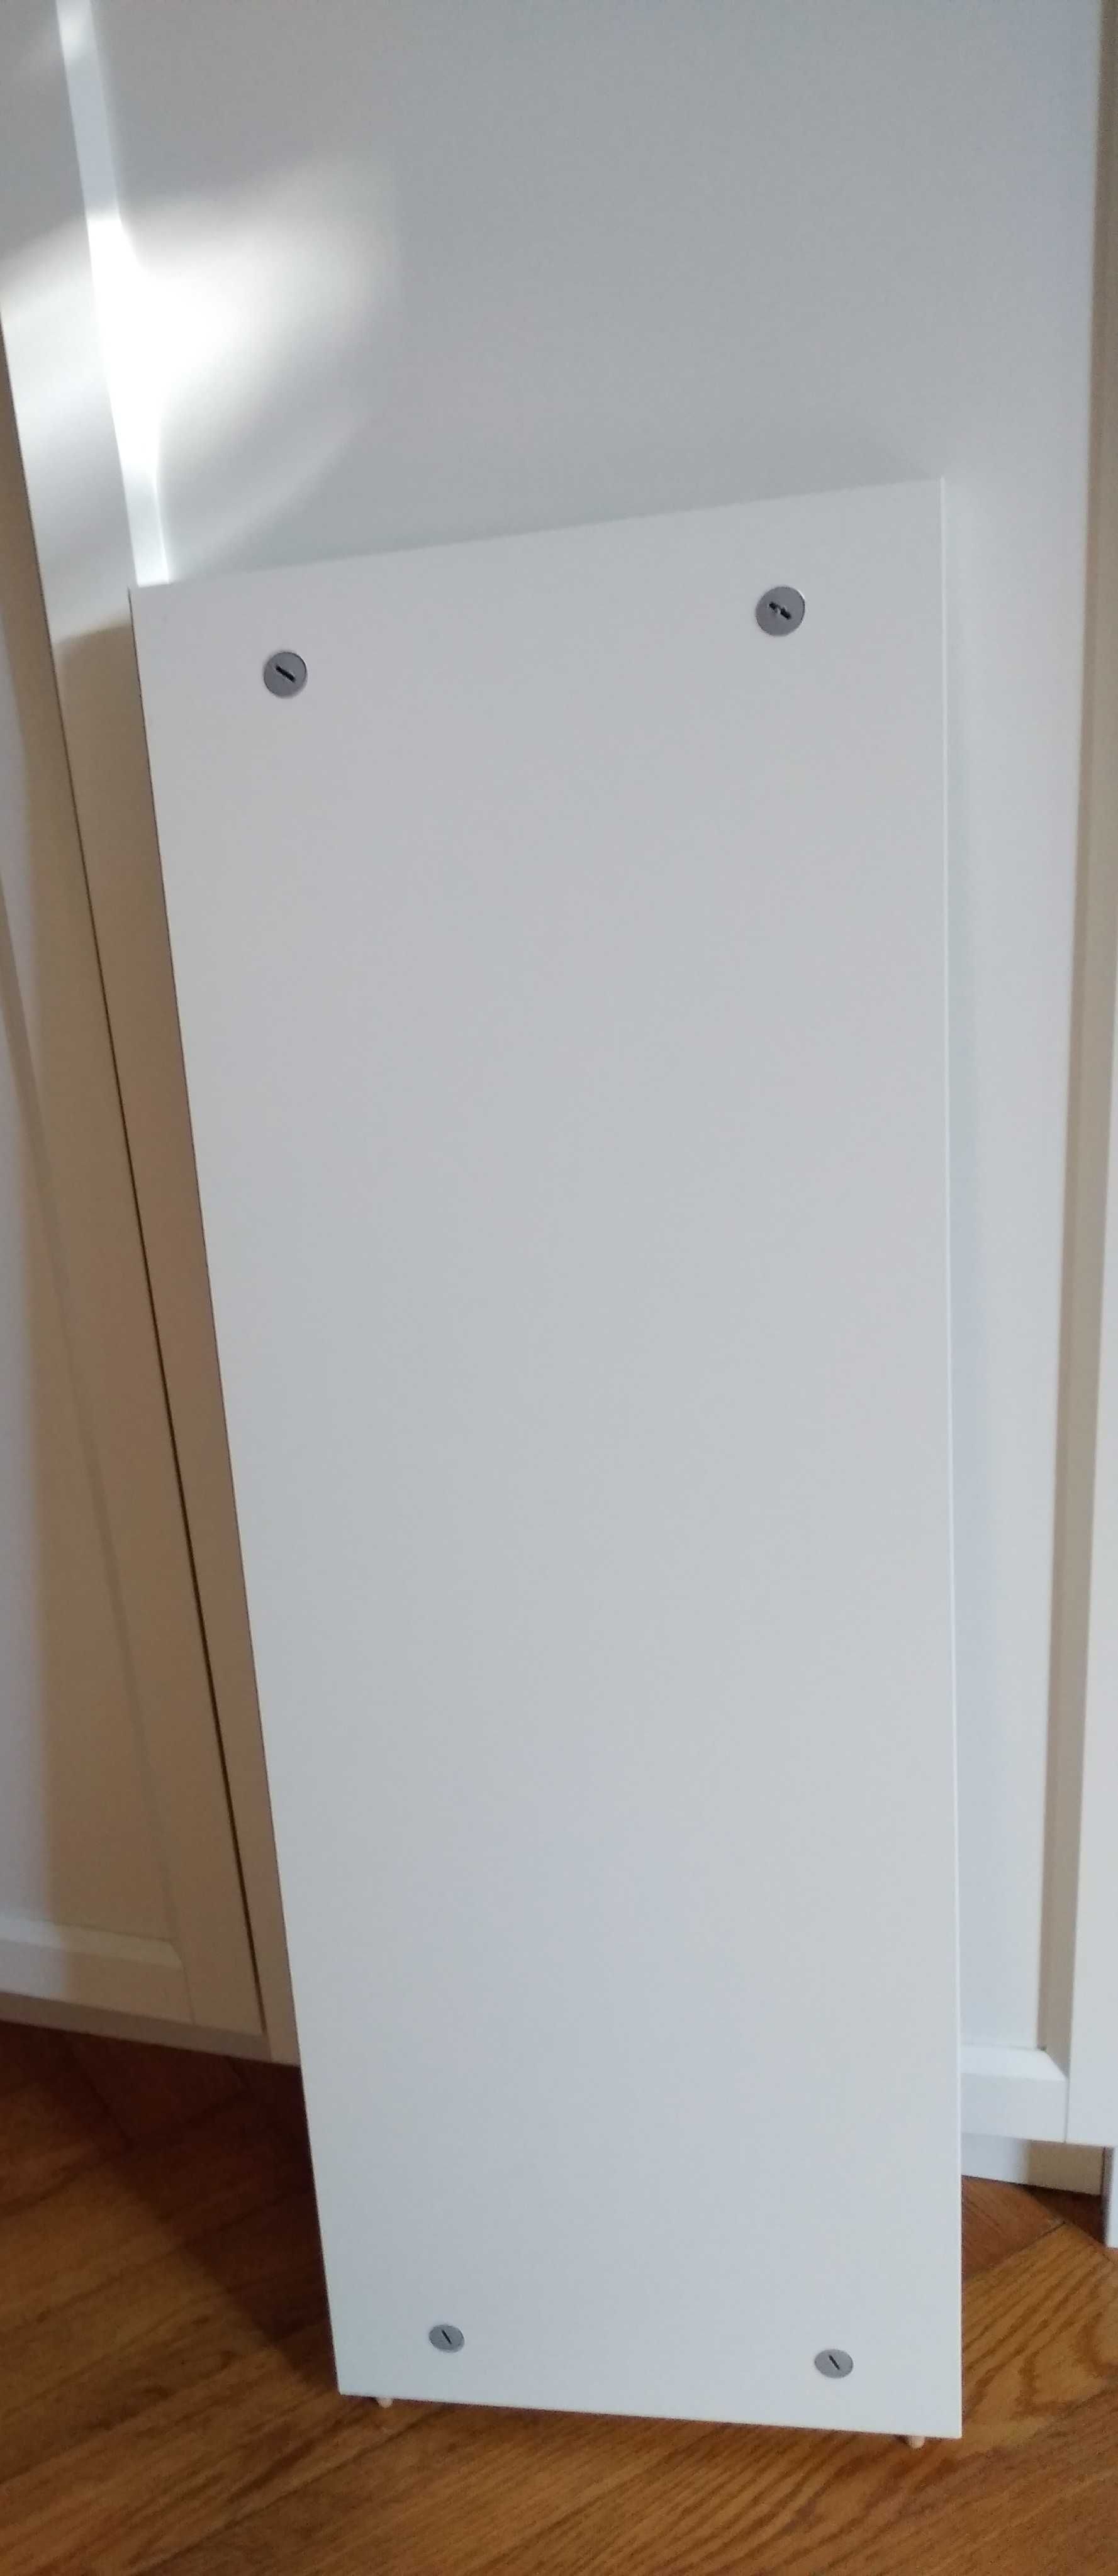 półka ŚRODKOWA do regału billy/oxberg 
IKEA, 26x76,5